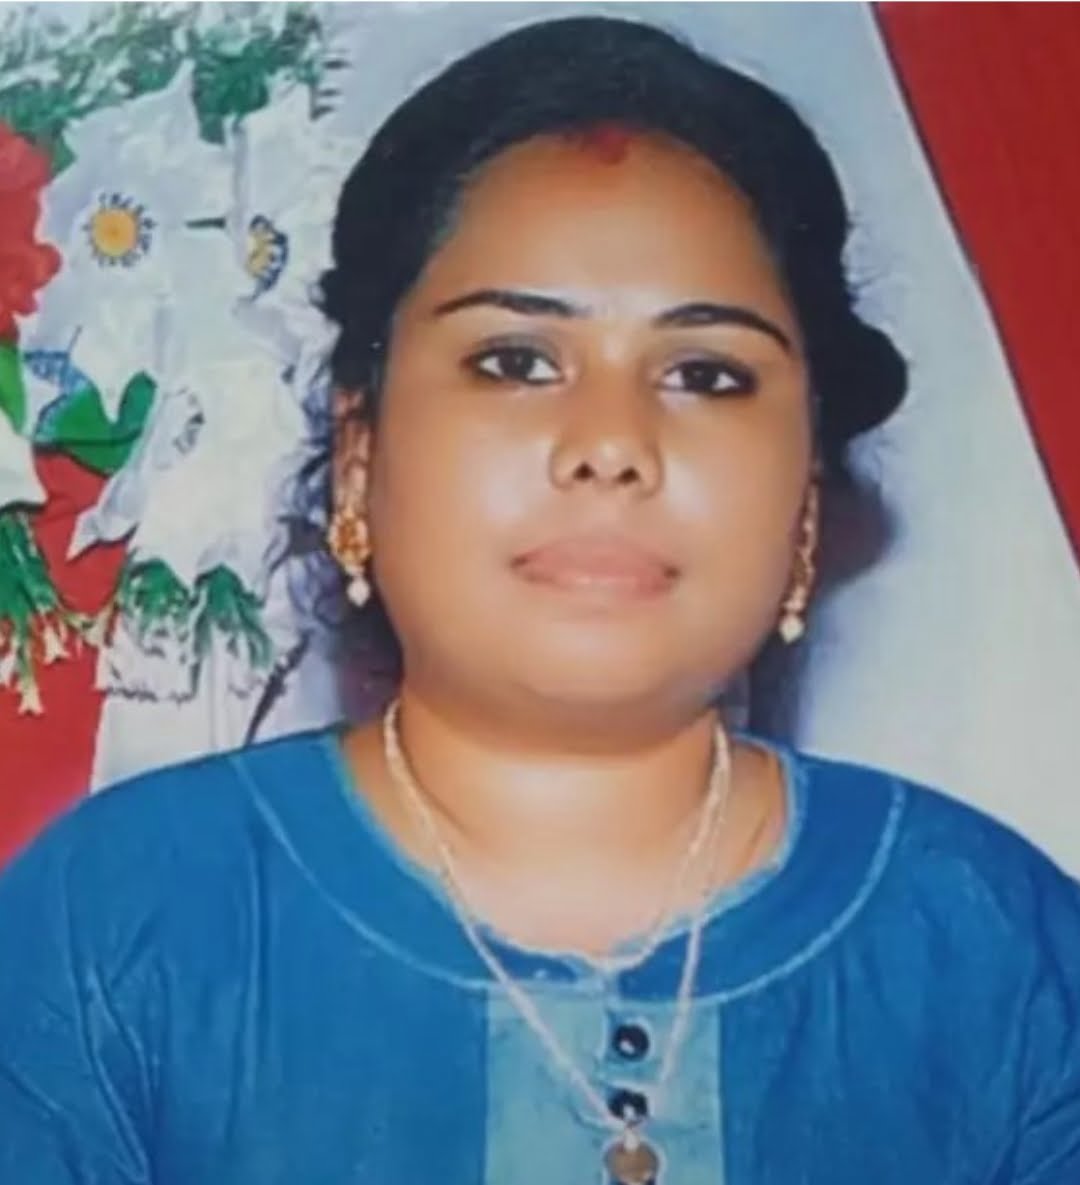 குடும்பப் பெண்ணை காணவில்லை - காத்தான்குடி பொலிஸ் நிலையத்தில் முறைப்பாடு - Lanka News - Tamilwin News